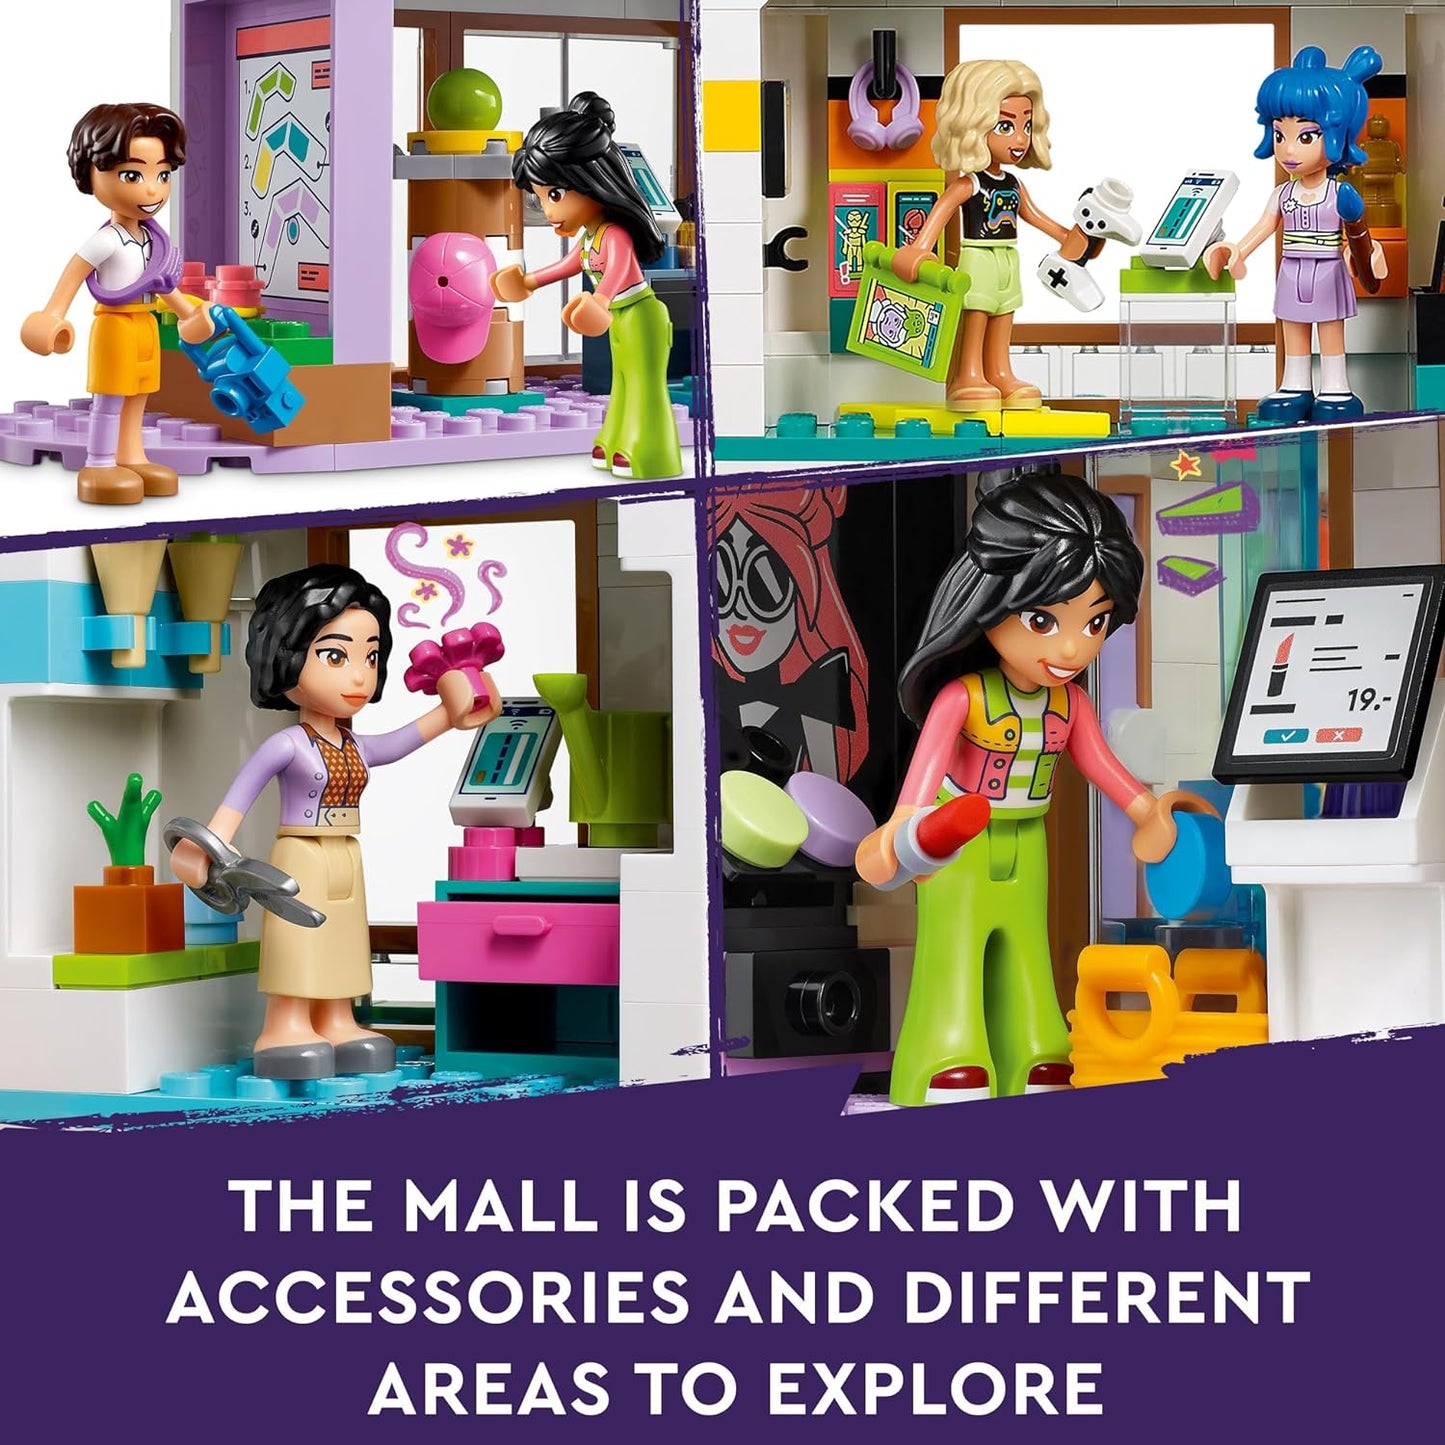 LEGO Friends Heartlake City Shopping Mall com 5 lojas de brinquedos para meninas, meninos e crianças a partir de 8 anos, brinquedos de dramatização, apresenta 7 personagens de minibonecas, ideia de presente de aniversário 42604